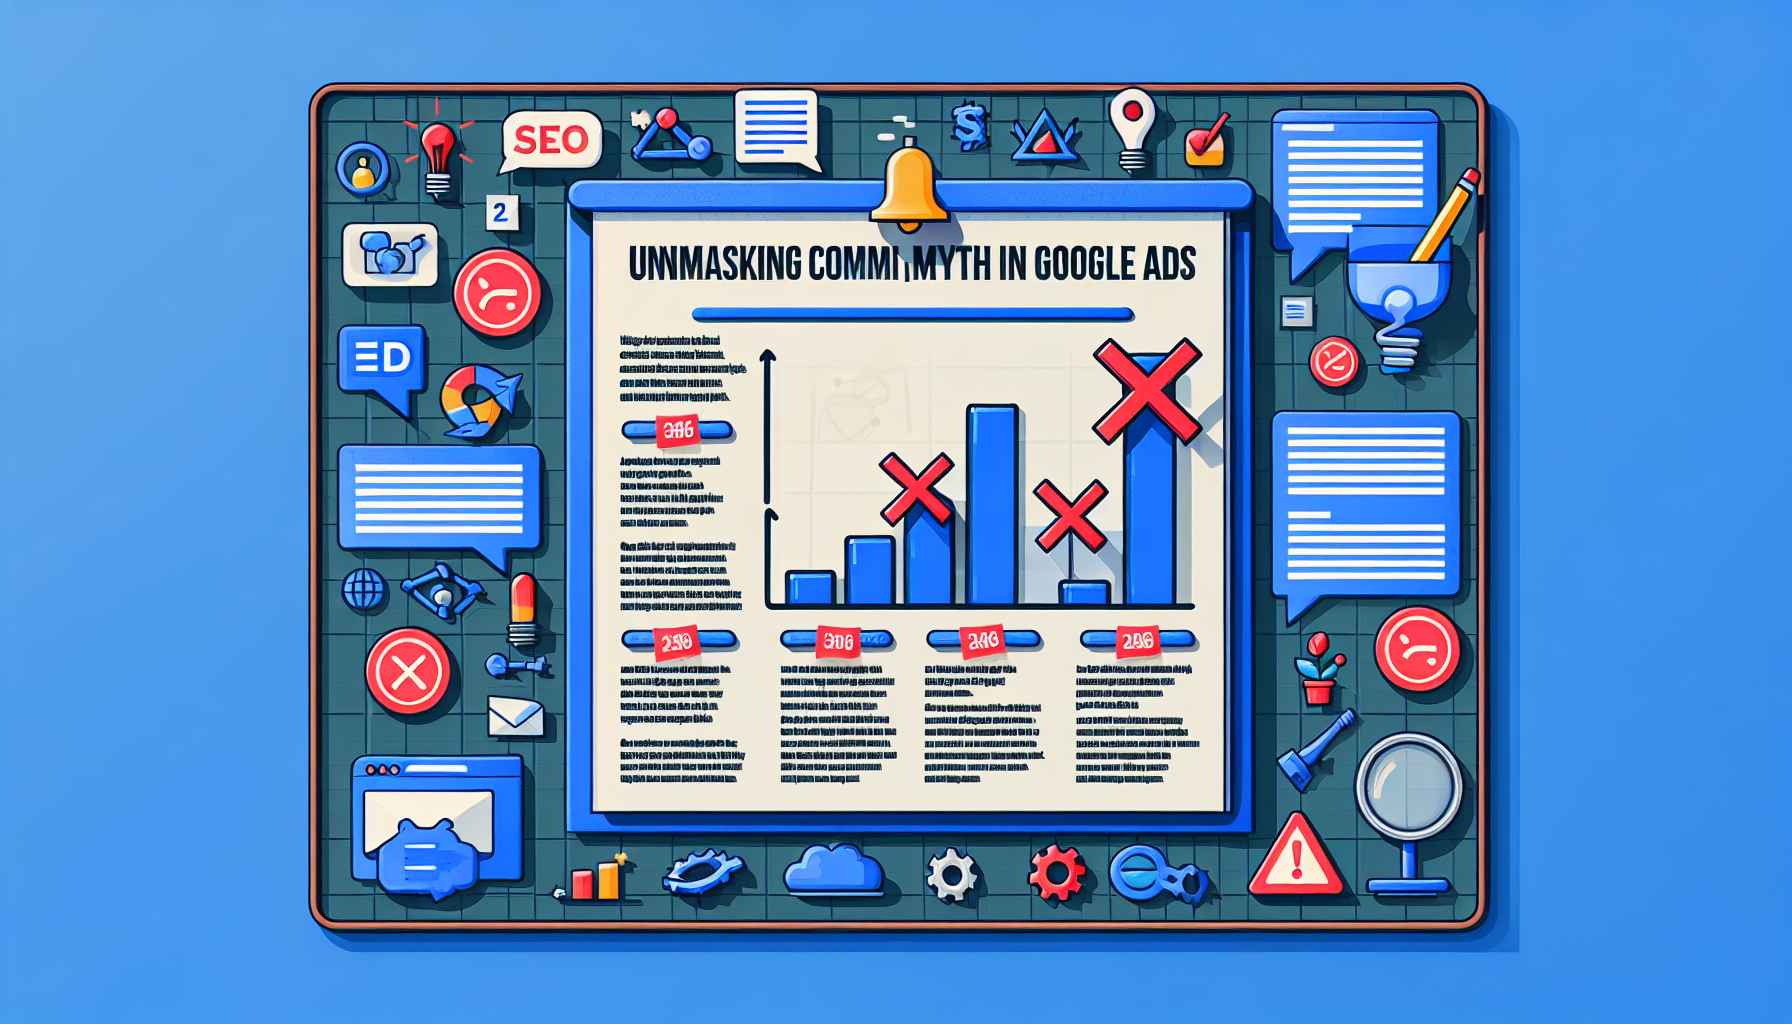 Desvendando Mitos Comuns no Google ADS